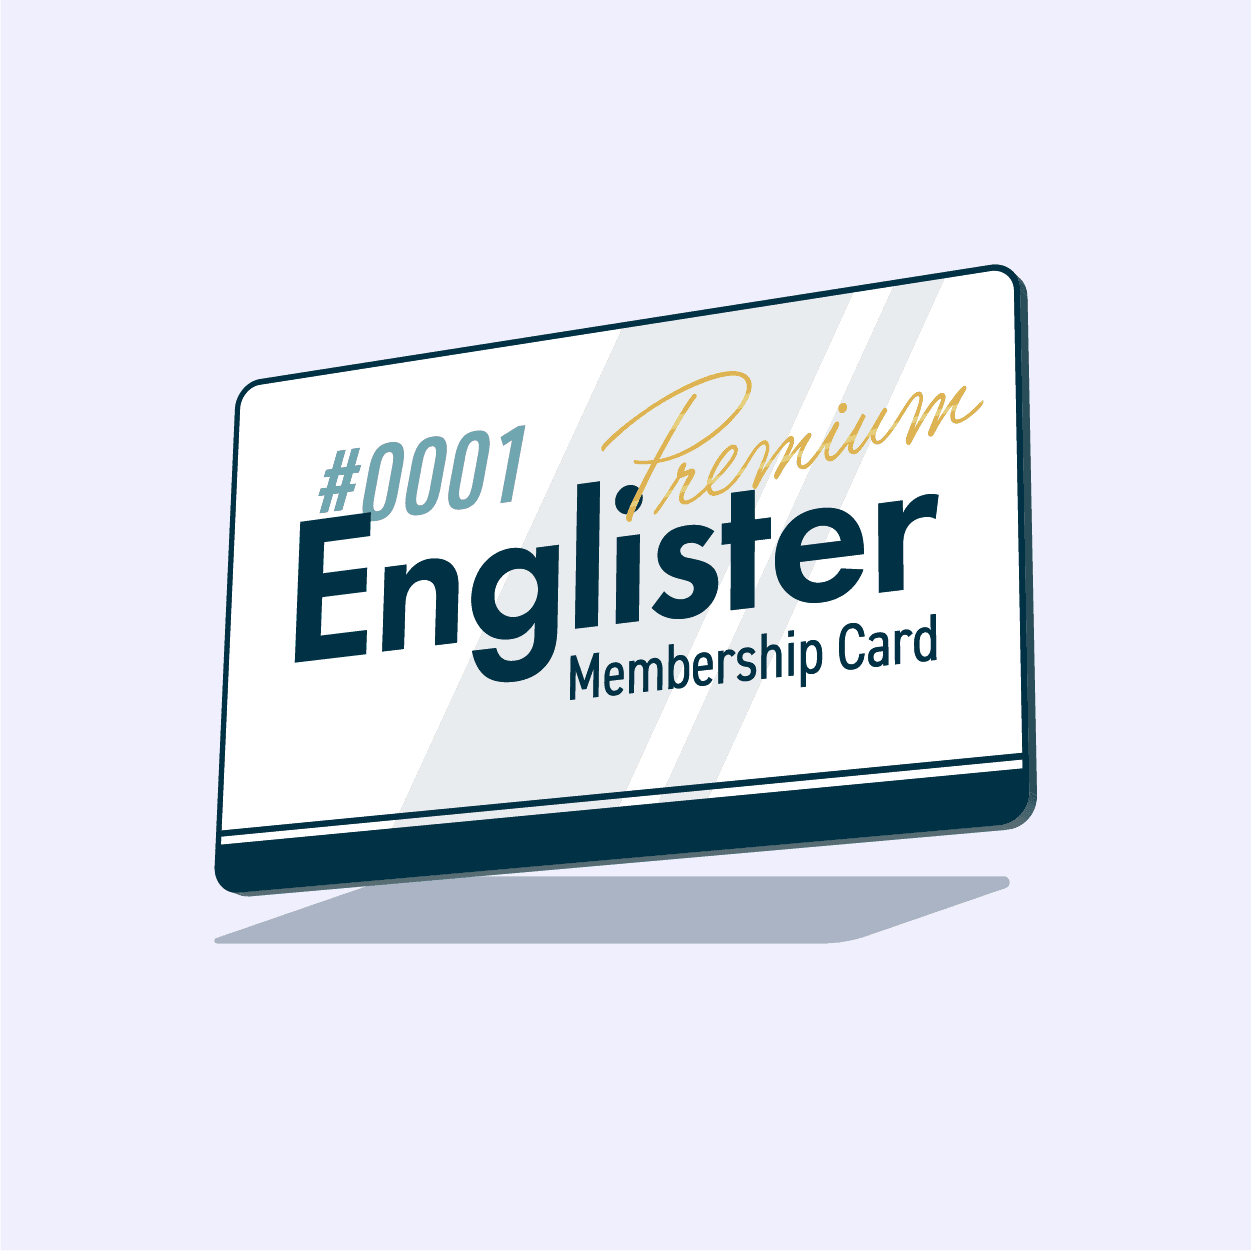 Englister Premium Membership #0001